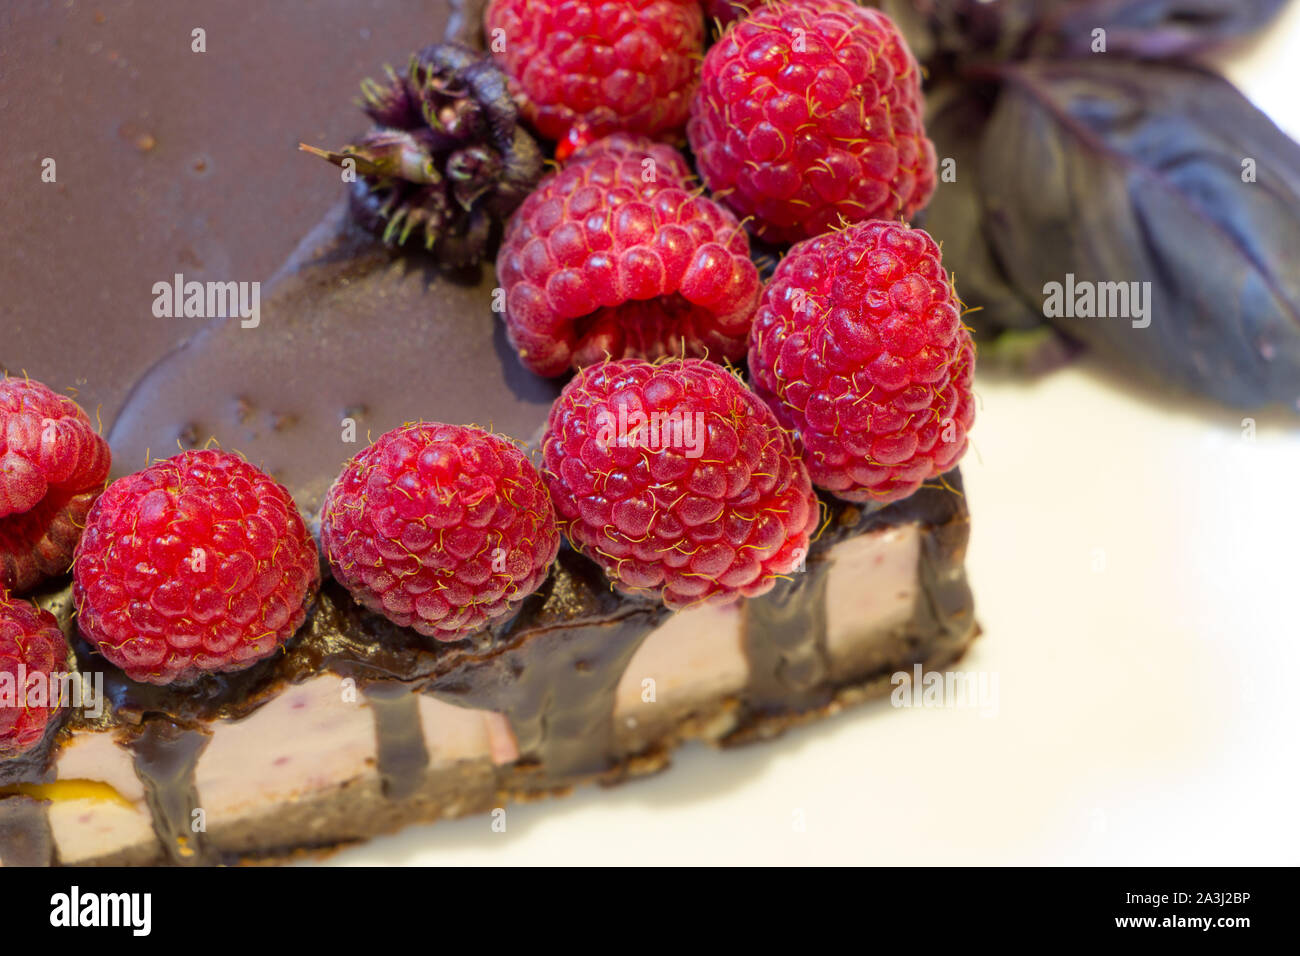 Le régime alimentaire des bonbons. Close up chocolate cake vegan avec framboises sur plaque blanche avec des feuilles de basilic. Produits naturels faits à partir des ingrédients inoffensifs. Banque D'Images